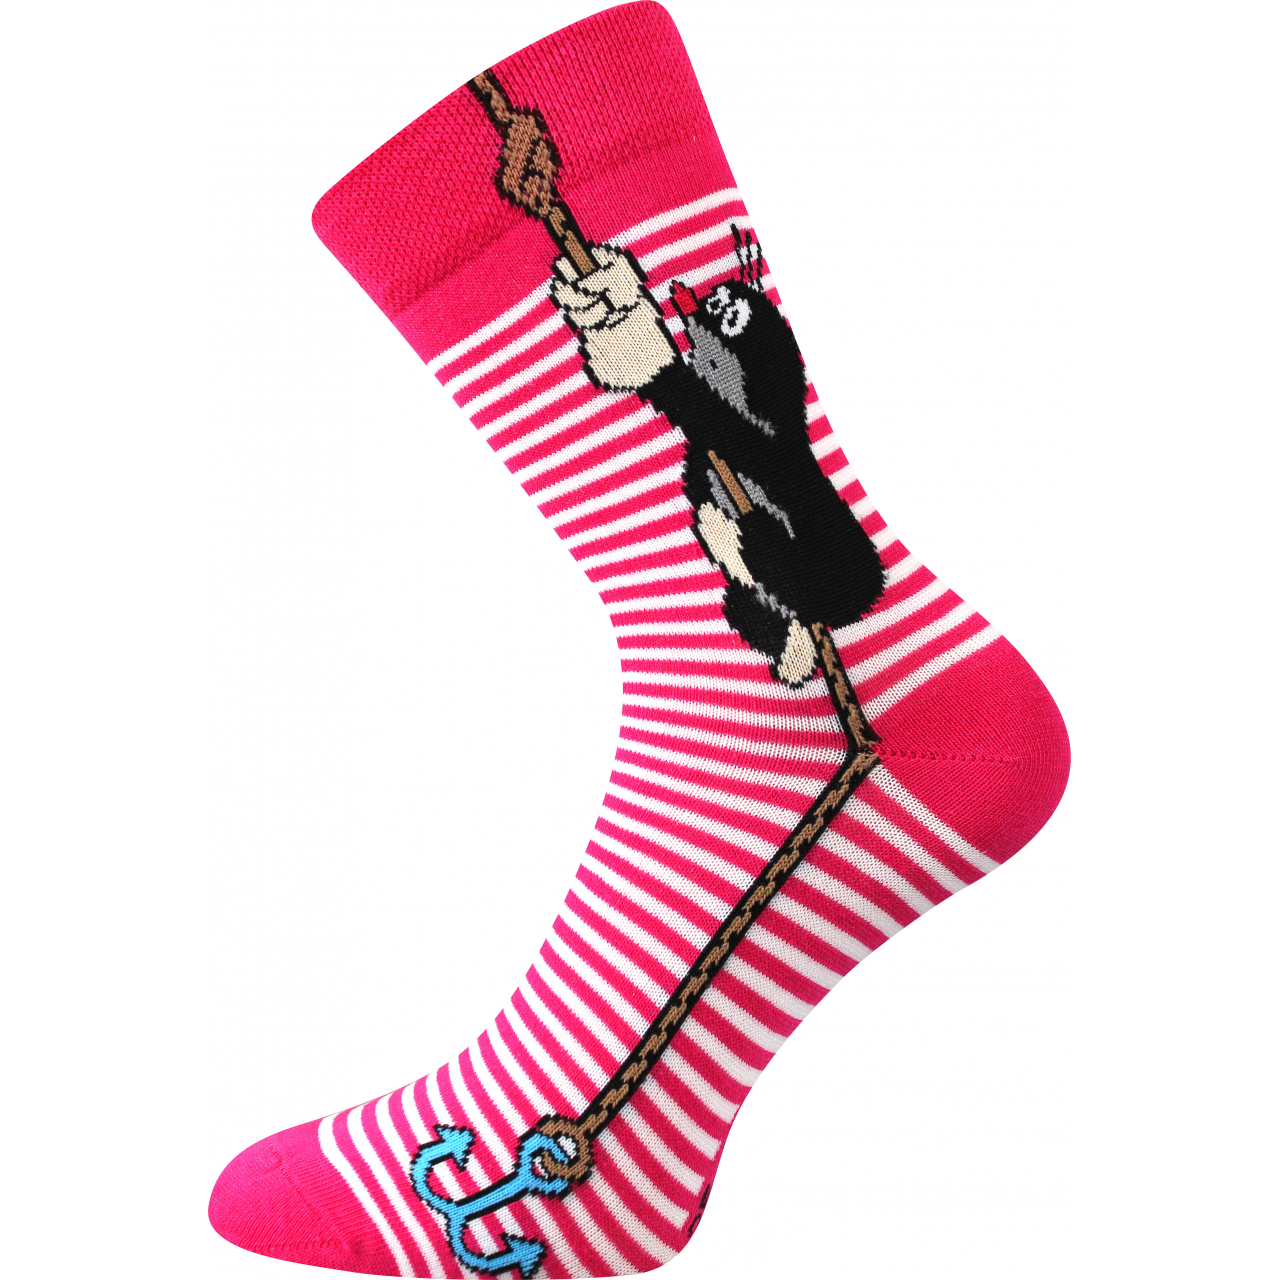 Ponožky klasické unisex Boma KR 111 - růžové, 39-42